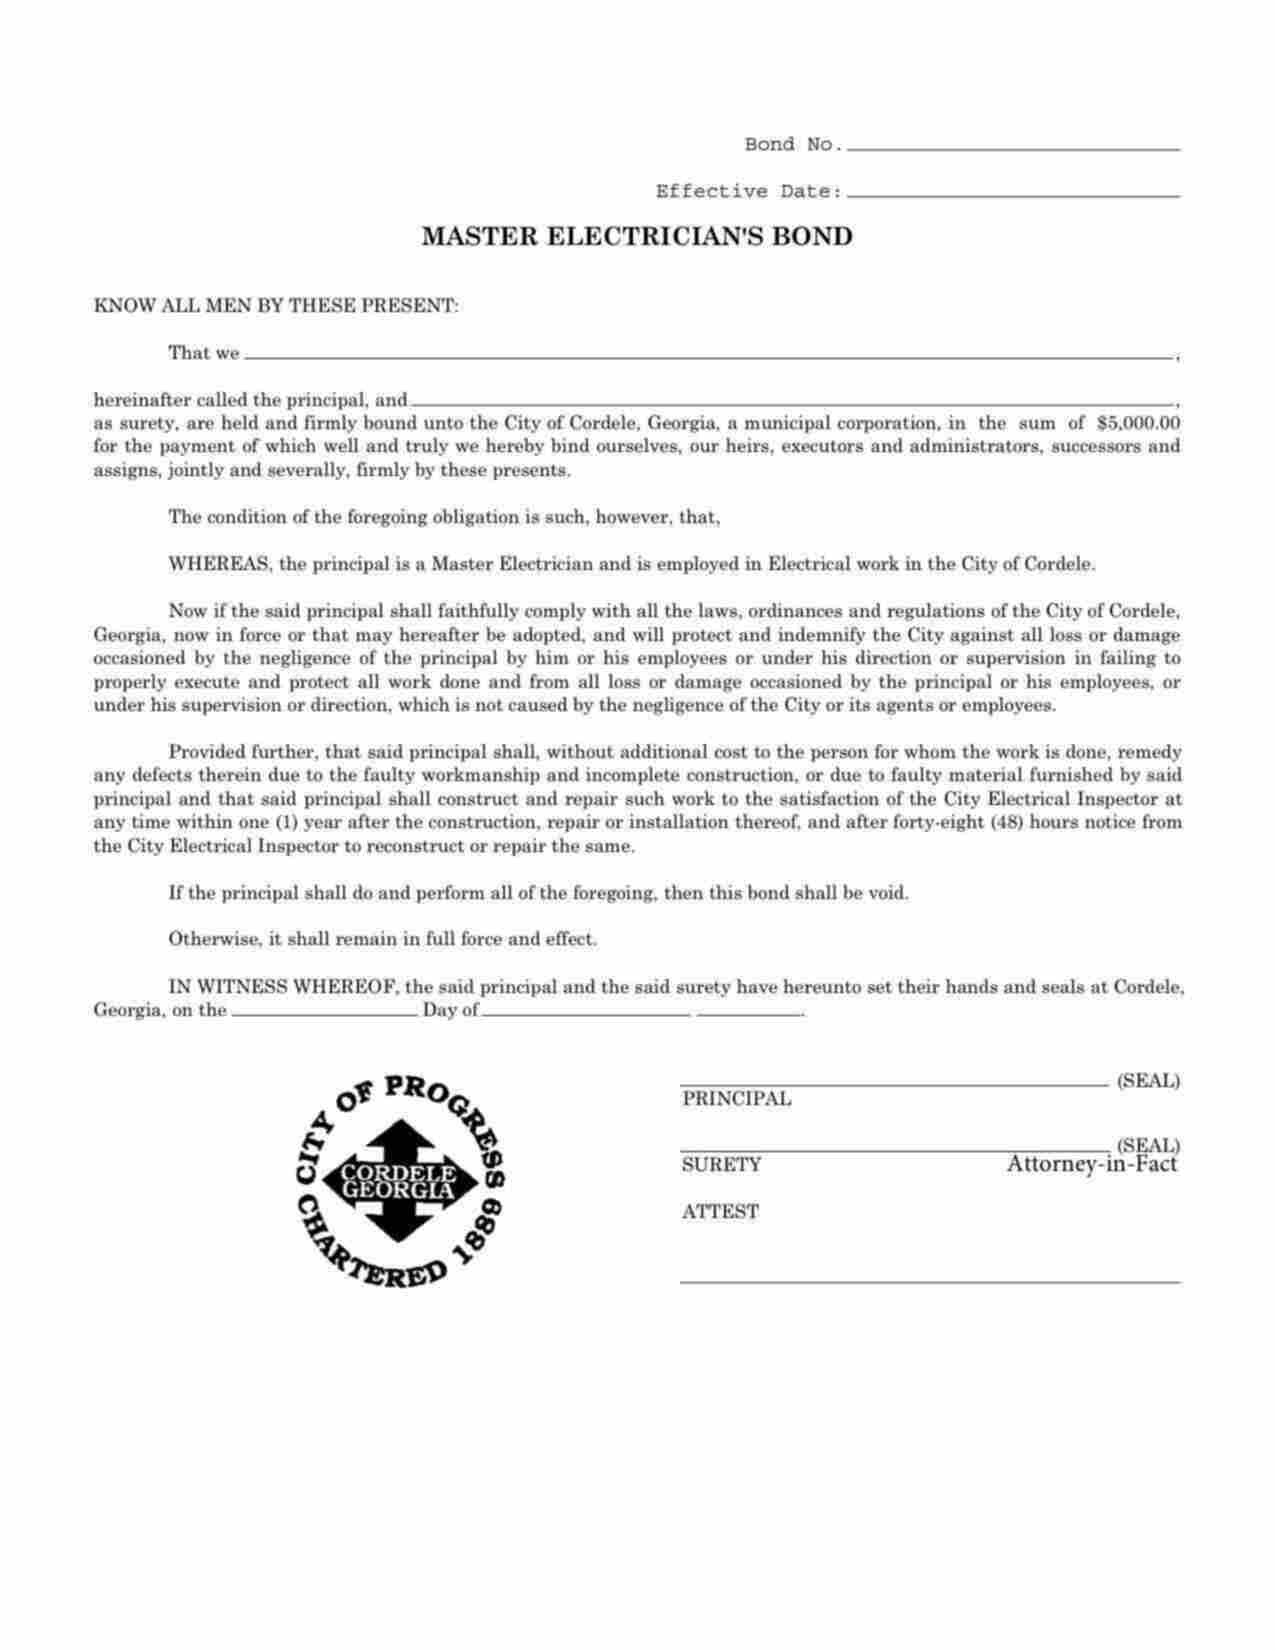 Georgia Master Electrician Bond Form